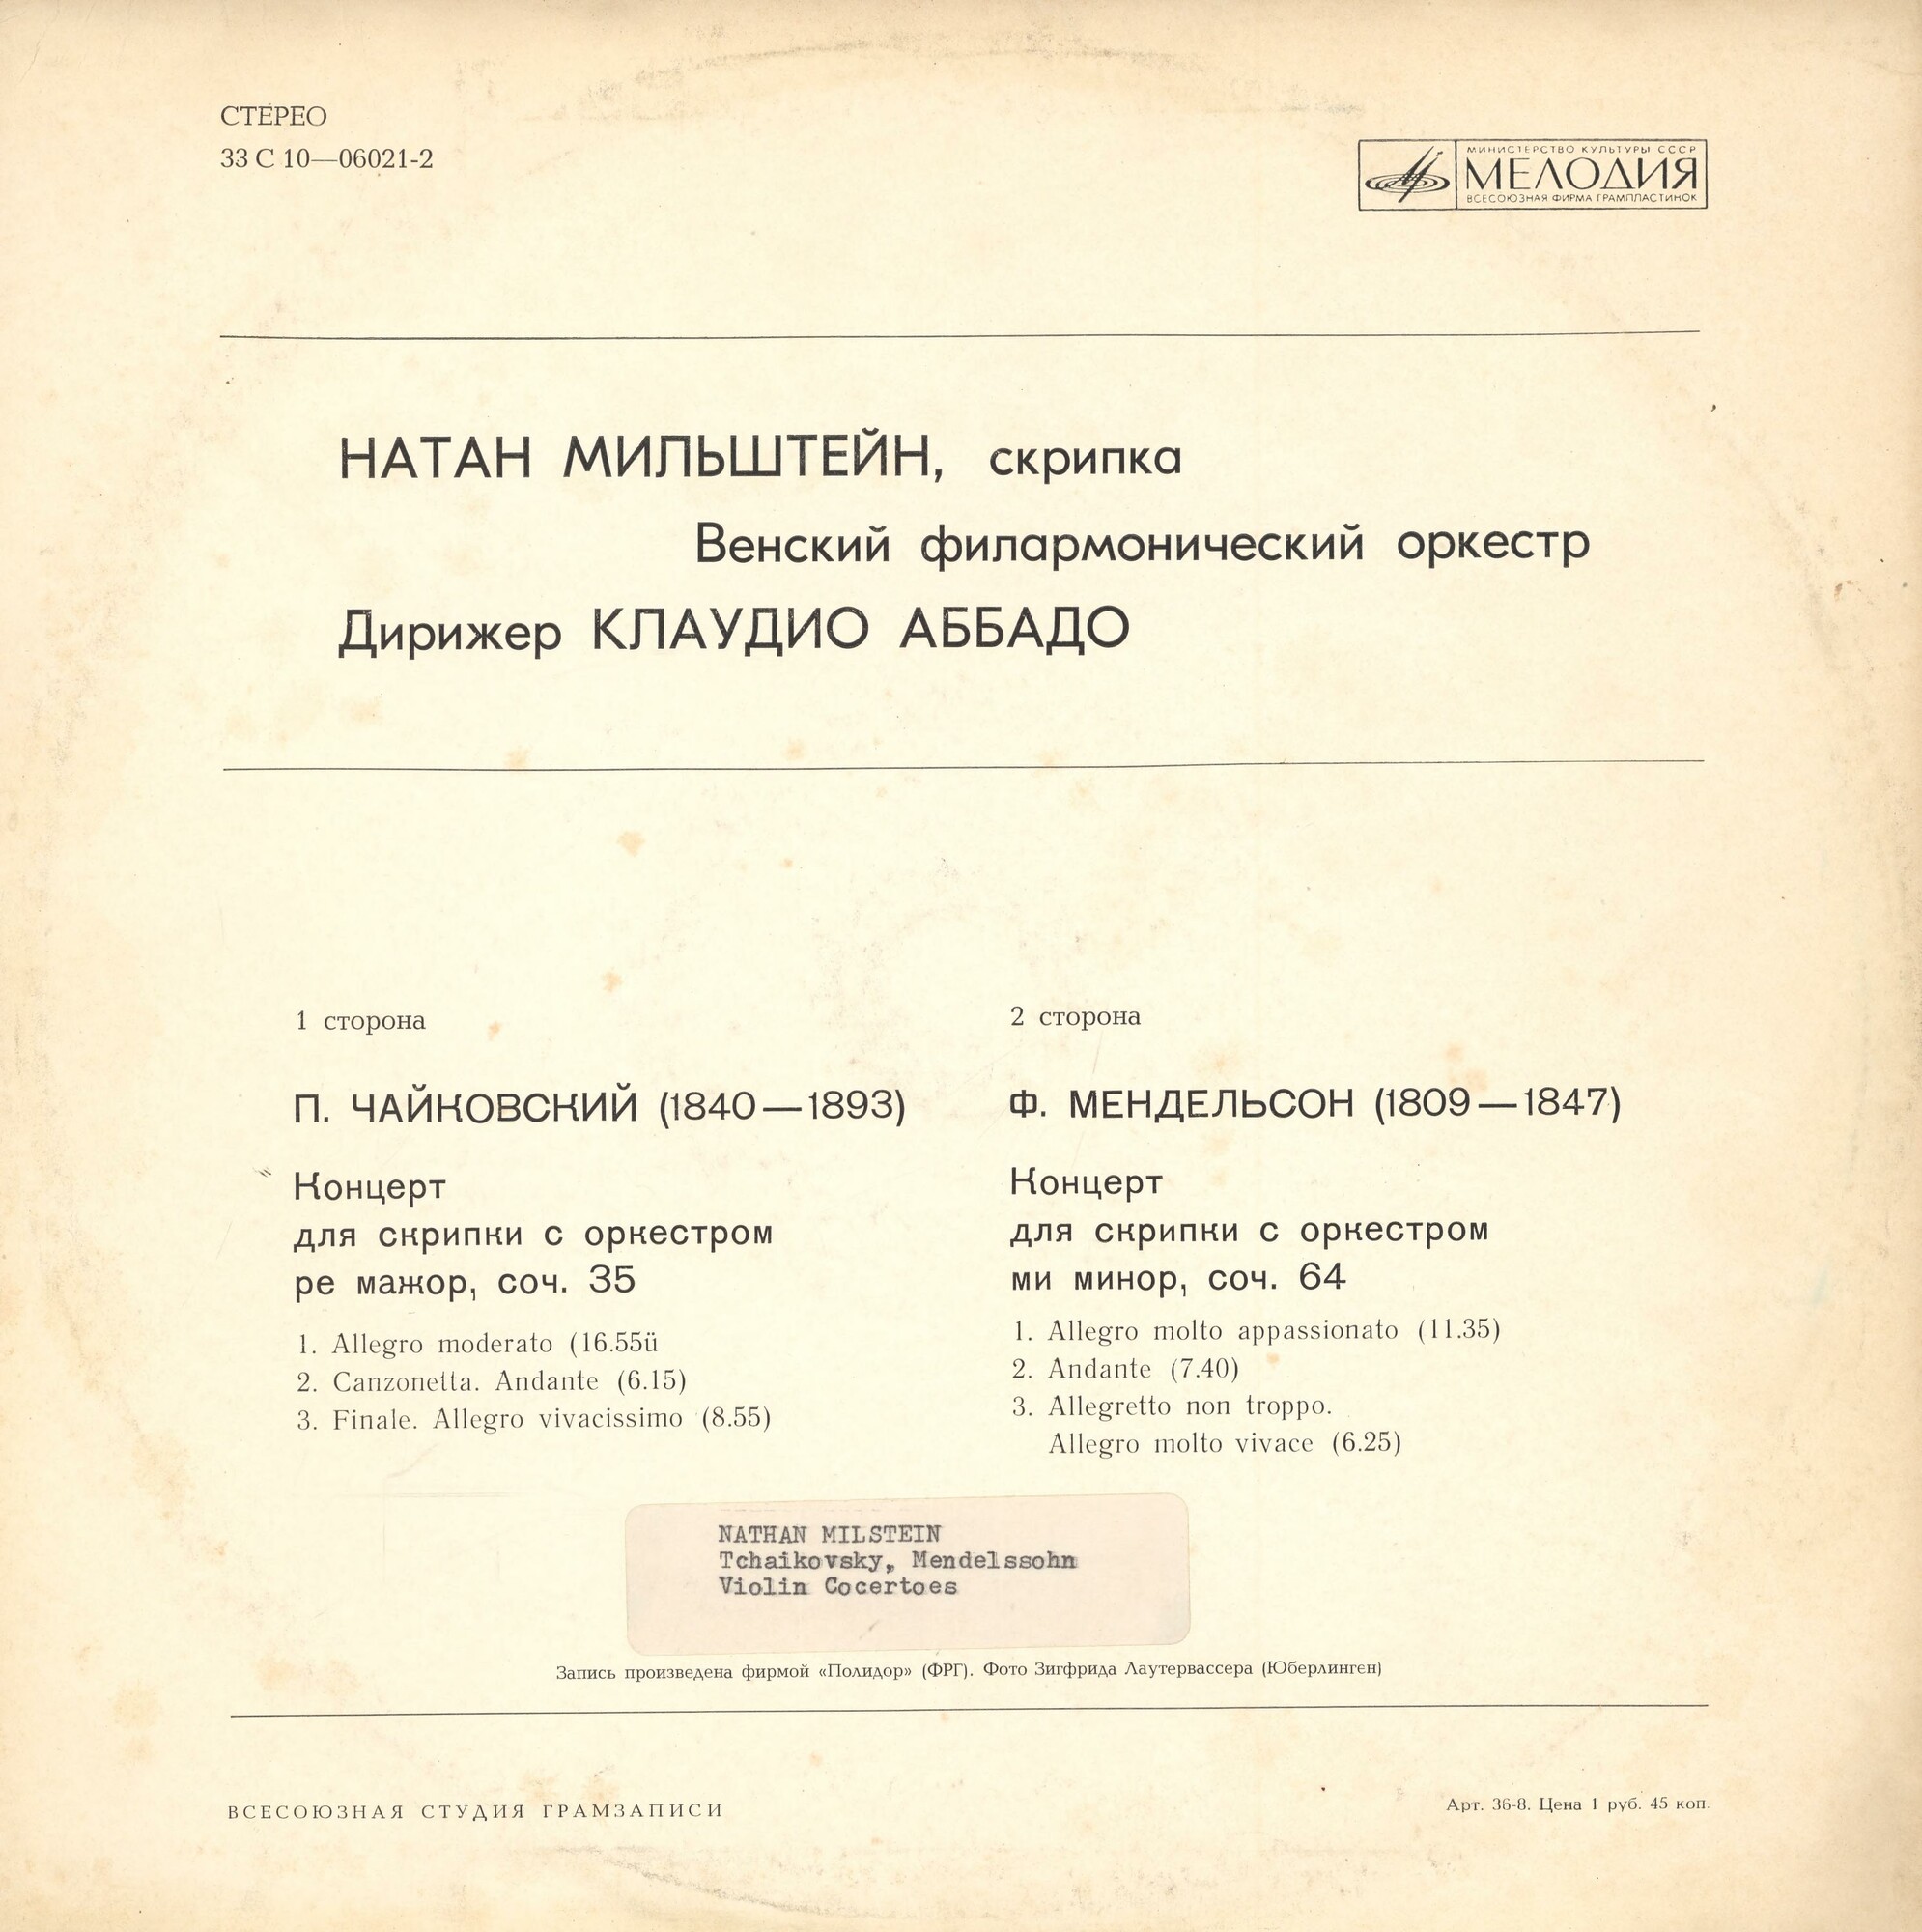 Натан МИЛЬШТЕЙН, Венский филармонический оркестр, дирижер Клаудио Аббадо